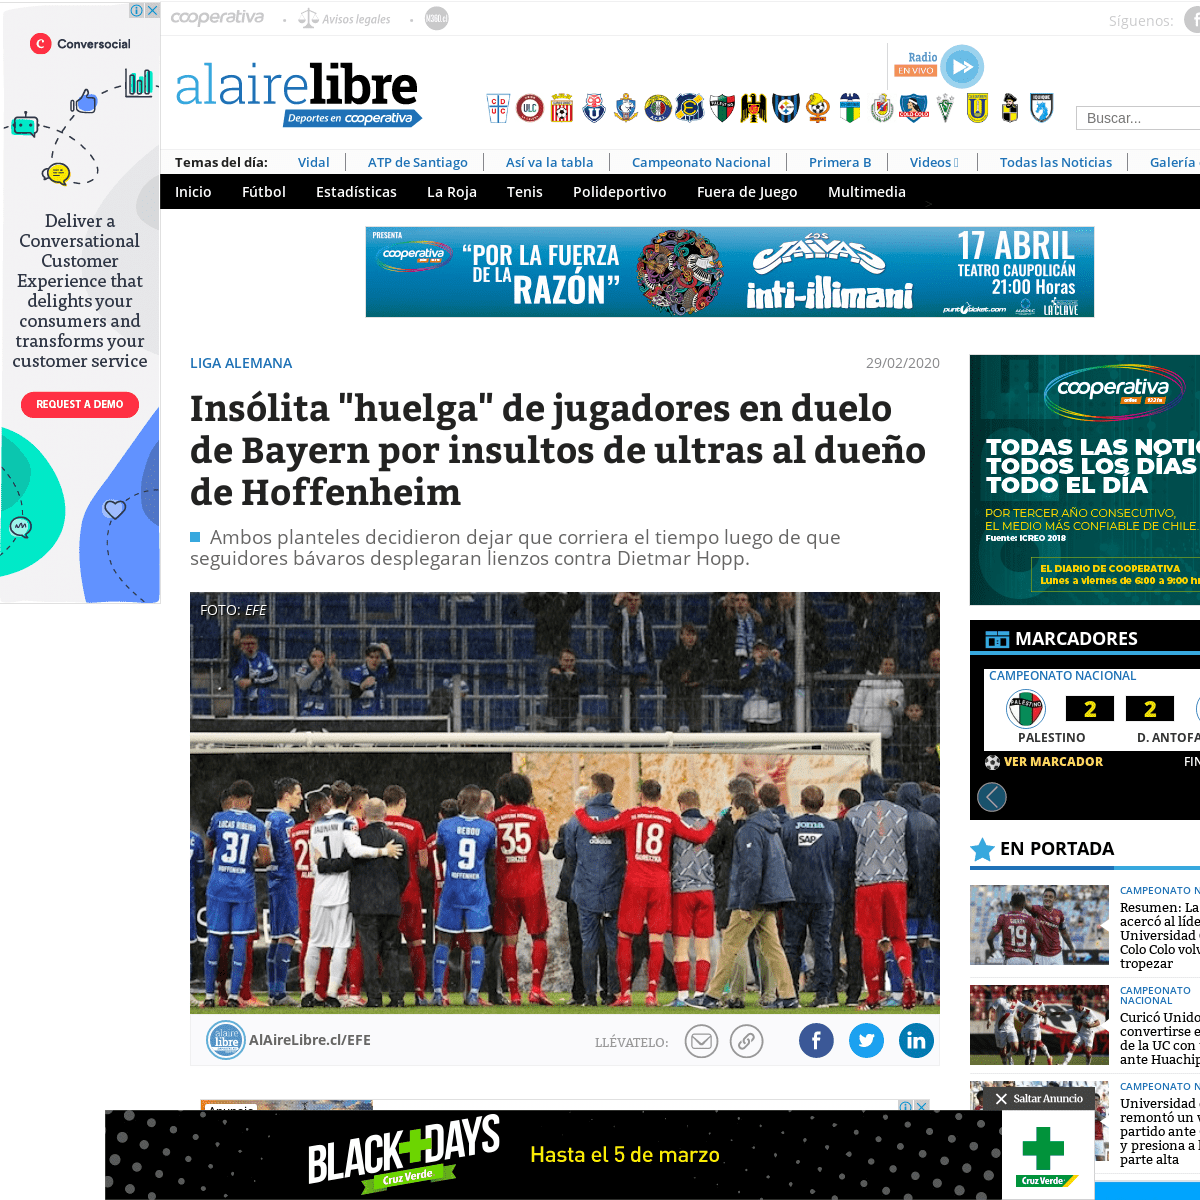 A complete backup of www.alairelibre.cl/noticias/deportes/futbol/liga-alemana/insolita-huelga-de-jugadores-en-duelo-de-bayern-po